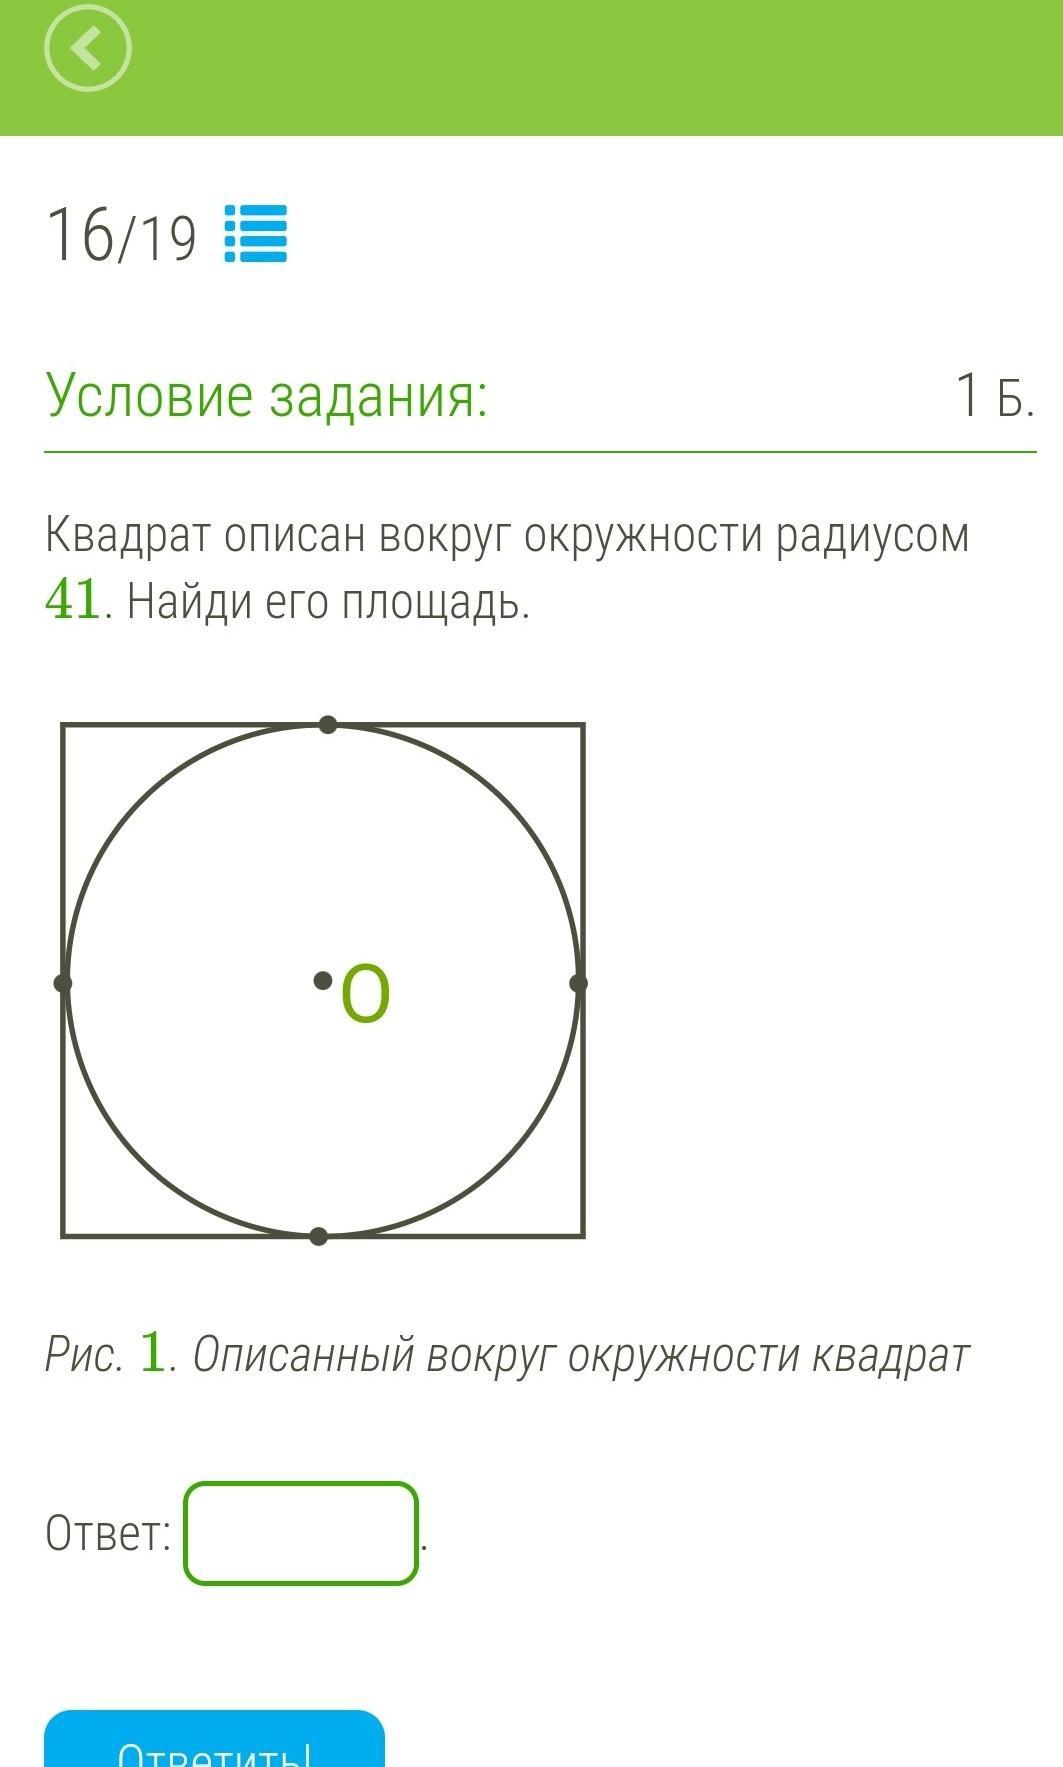 Площадь квадрата описанного вокруг окружности радиуса 4